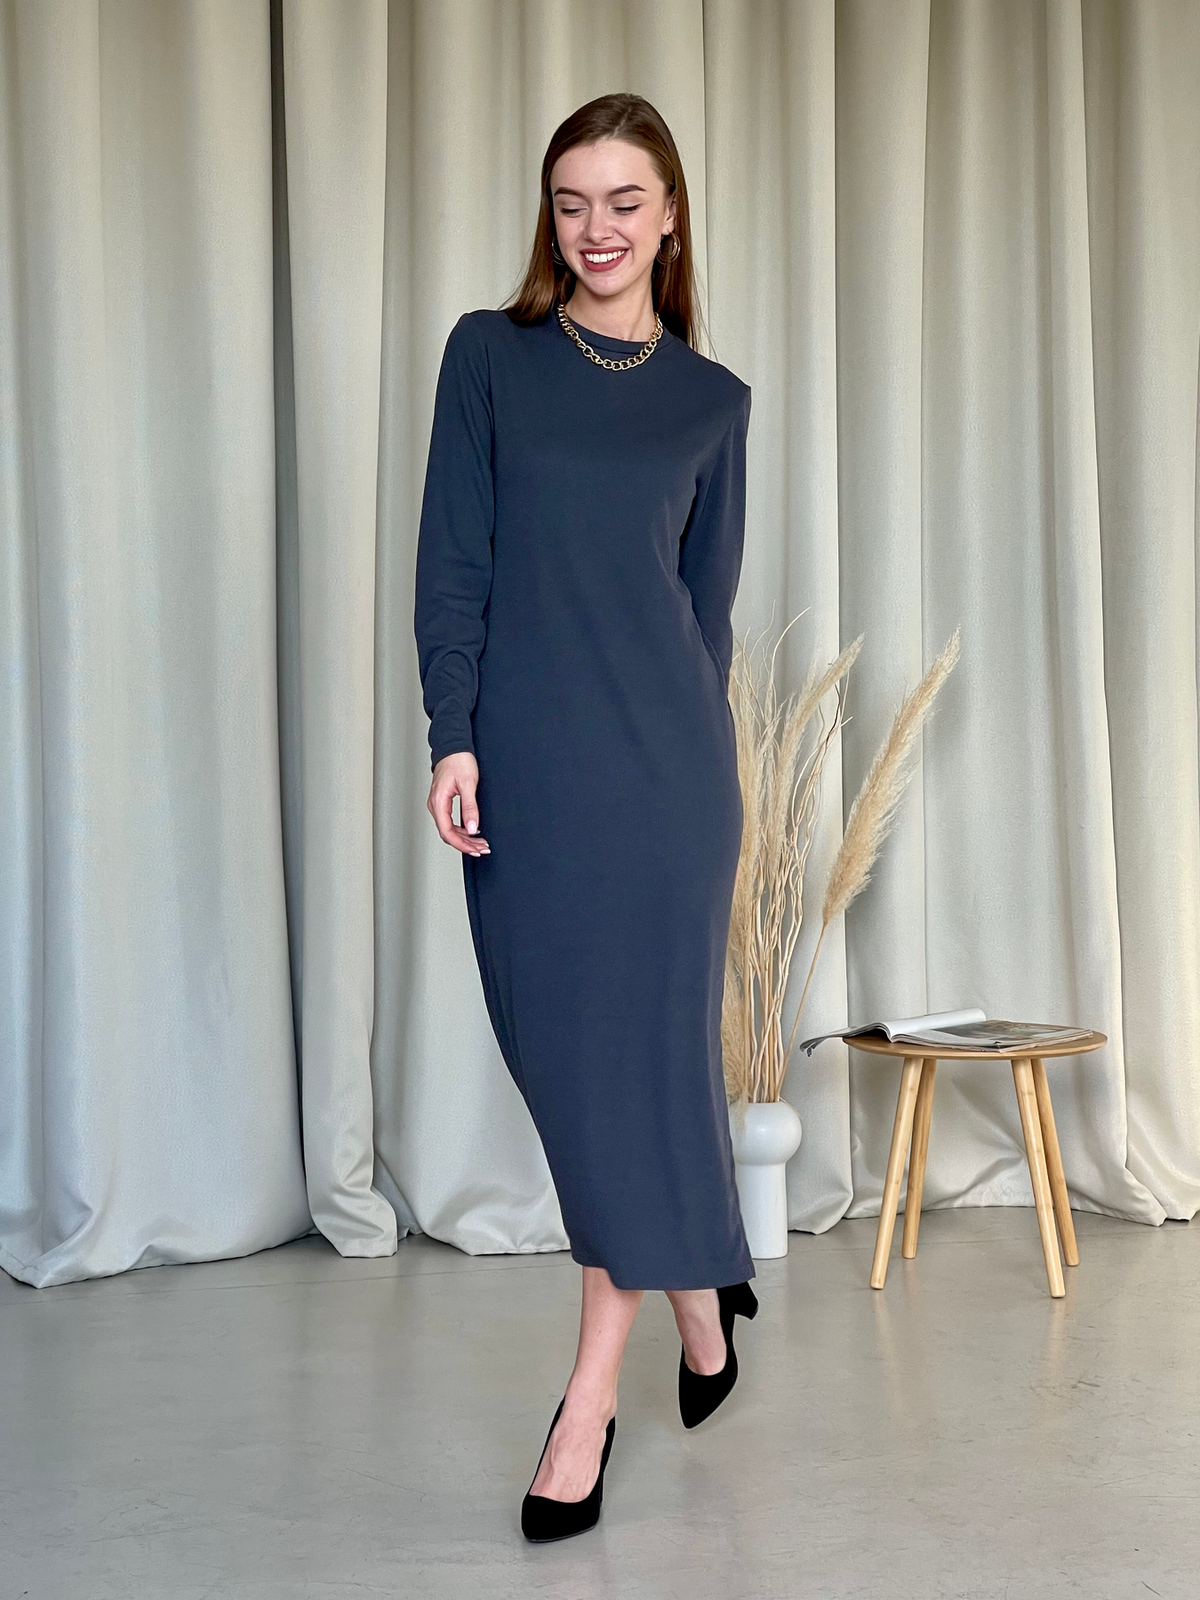 Купить Длинное платье серое в рубчик с длинным рукавом Merlini Кондо 700001162, размер 42-44 (S-M) в интернет-магазине